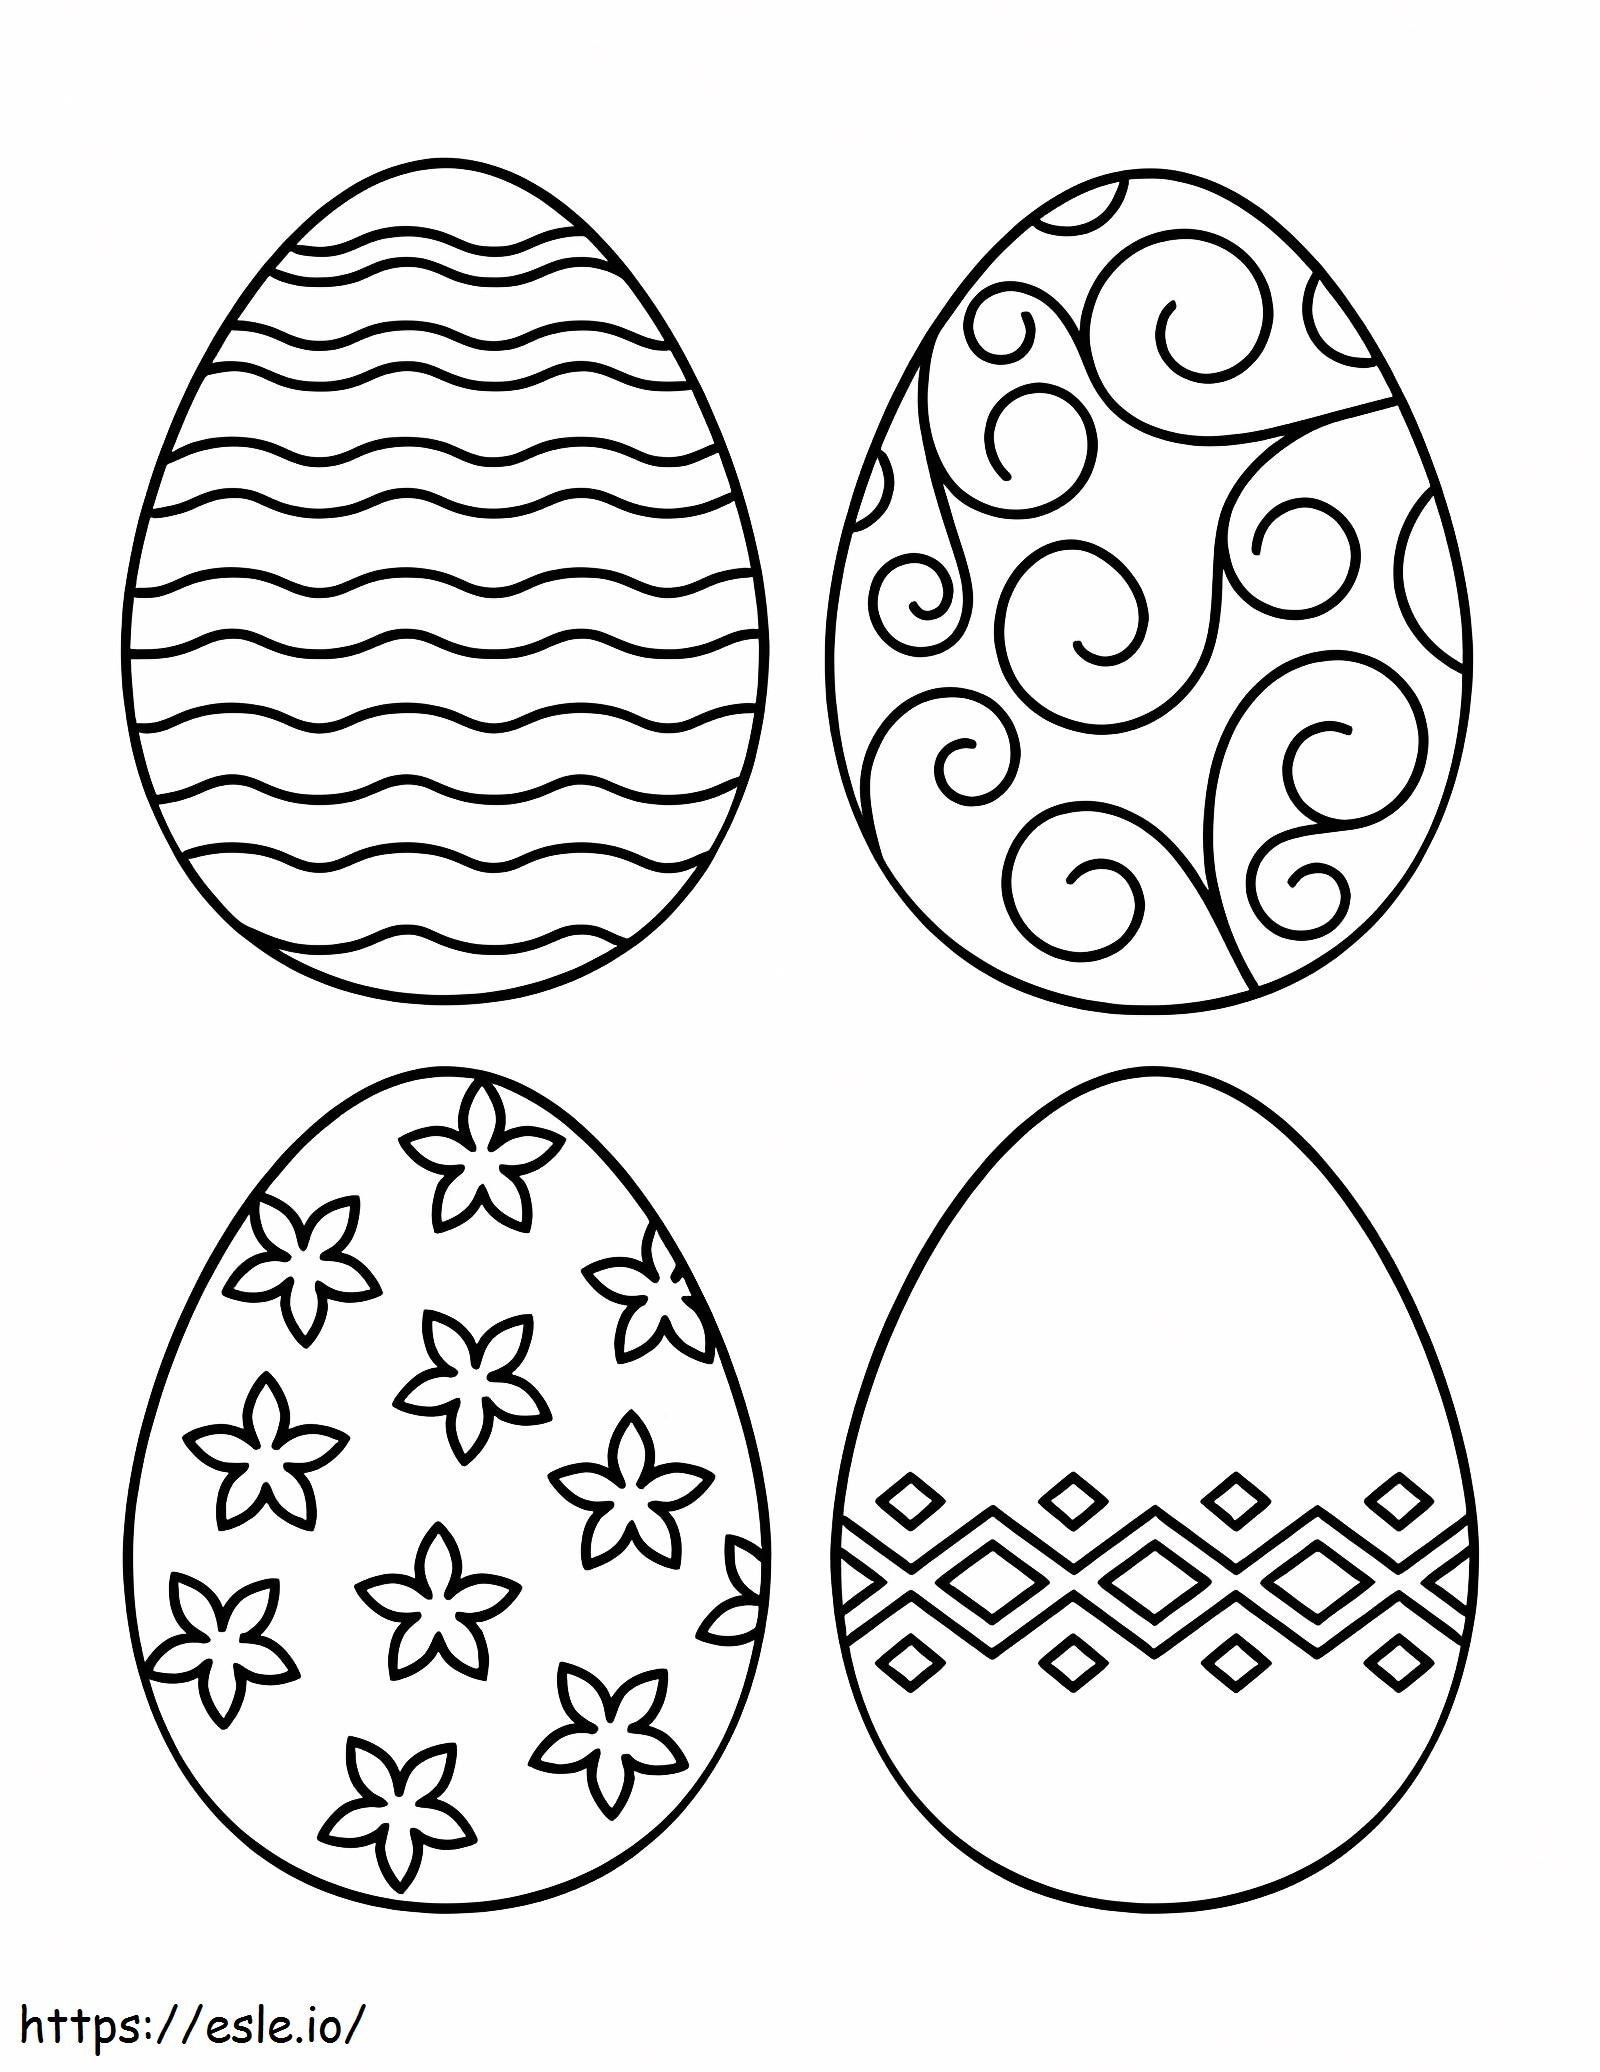 L'uovo è per adulti da colorare